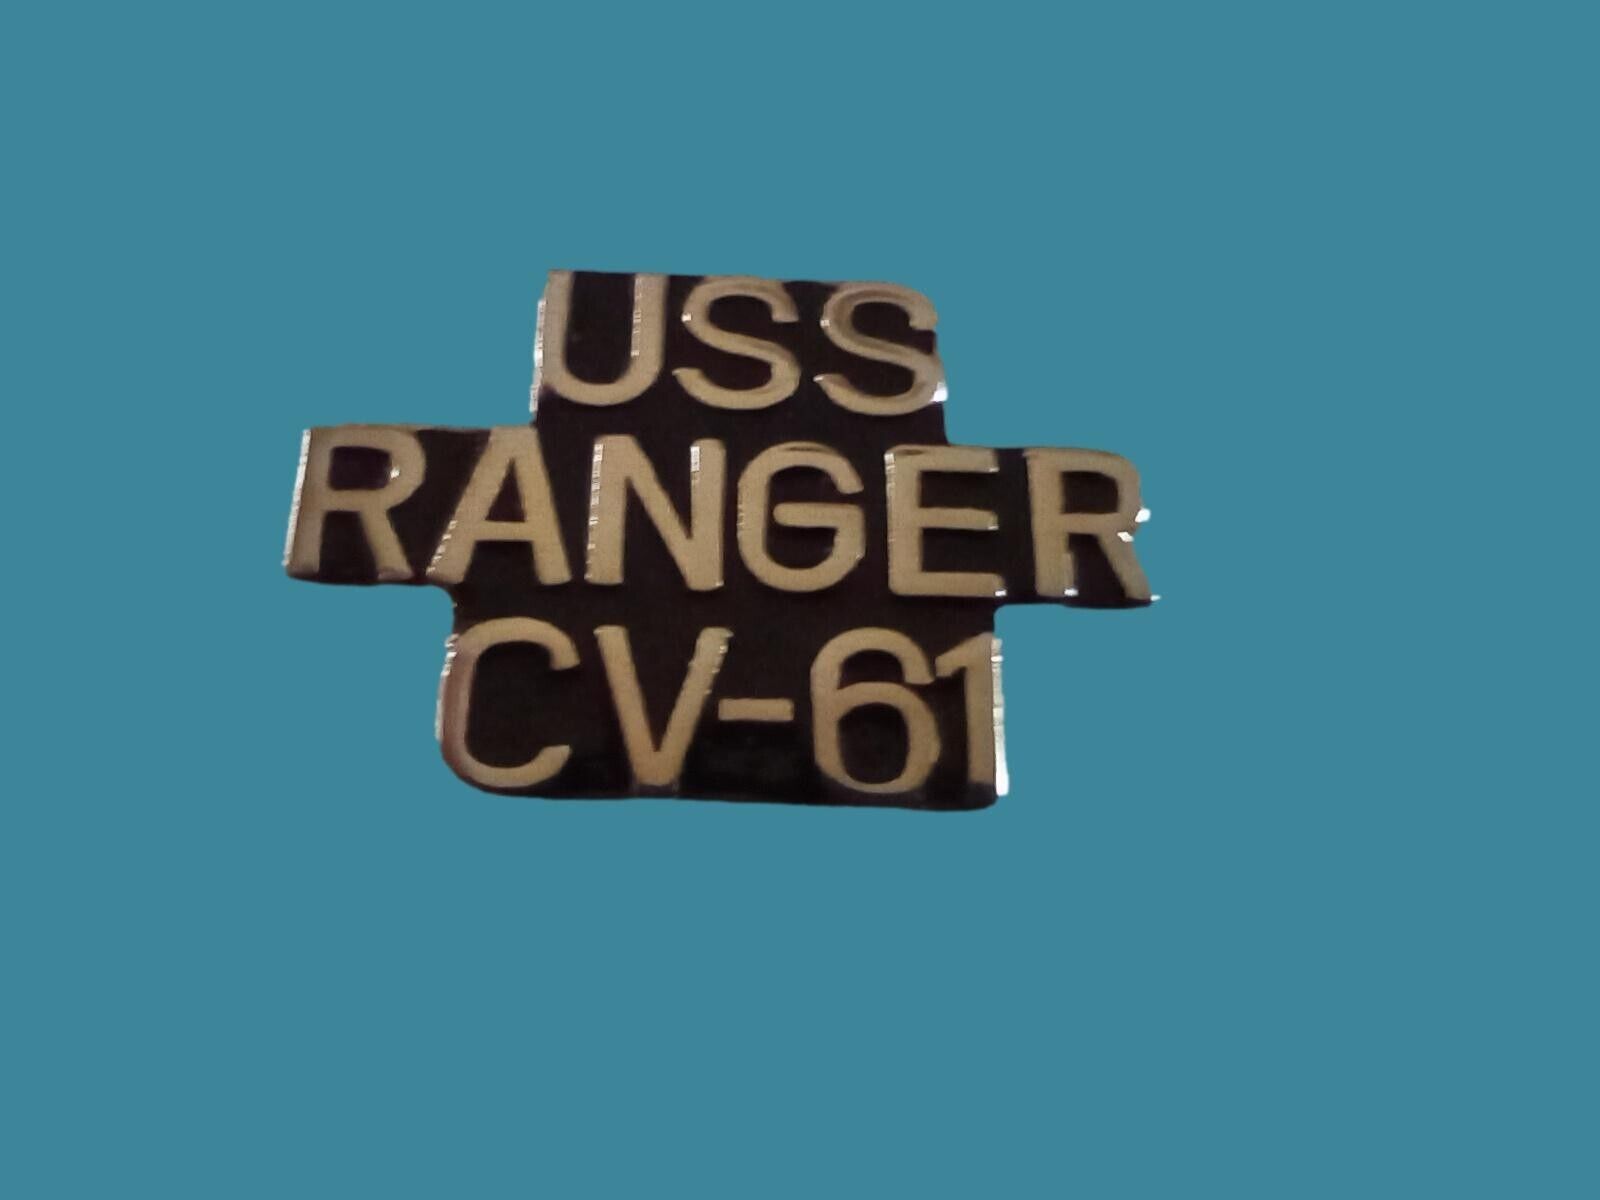 U.S MILITARY NAVY SHIP USS RANGER CV-61 HAT LAPEL PIN CLUTCH BACK 